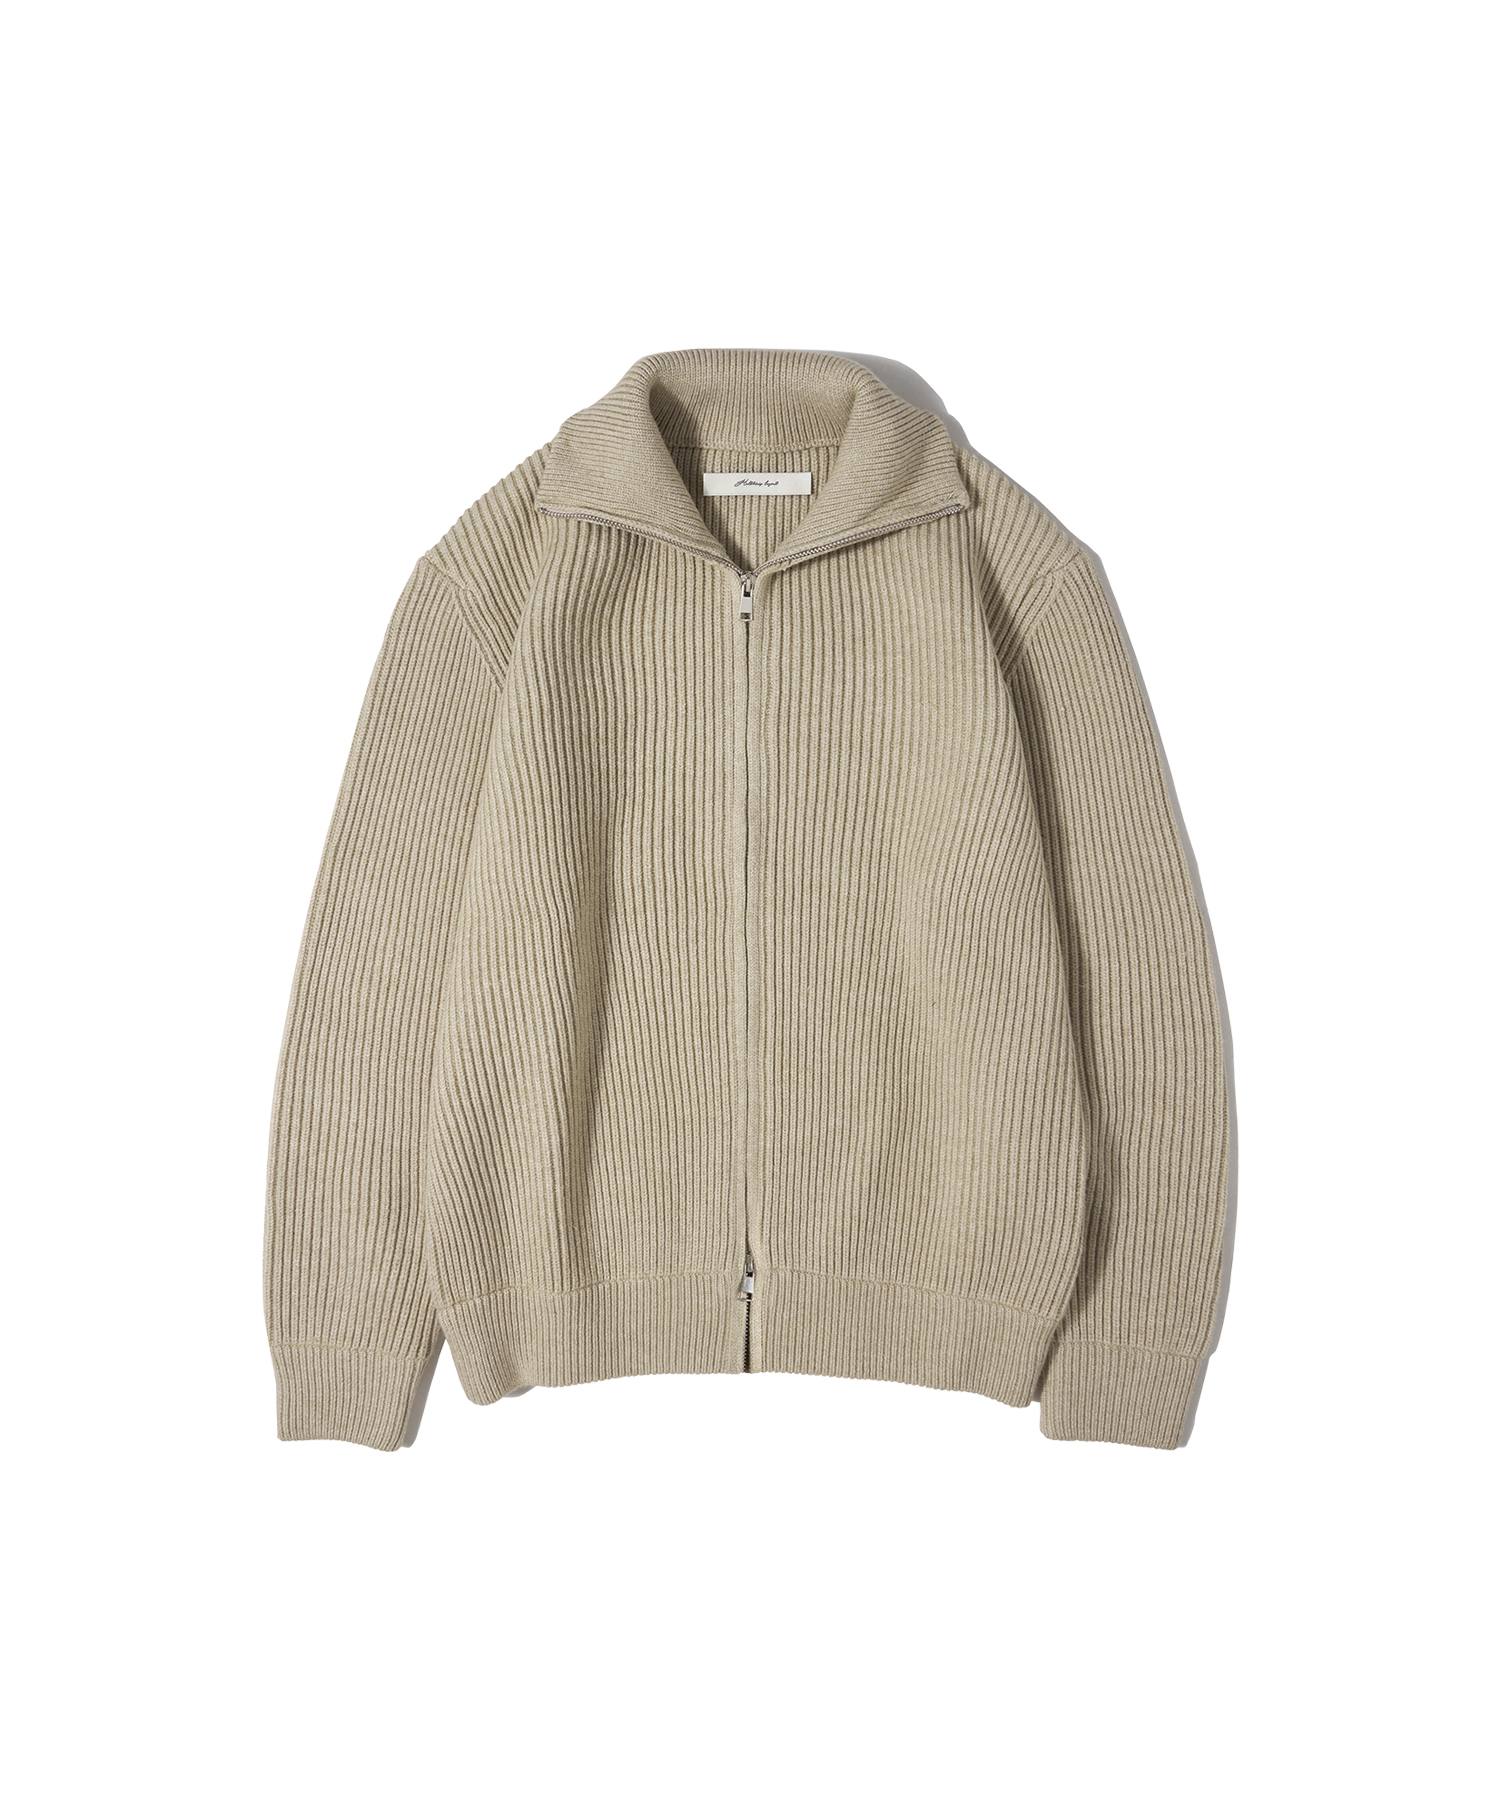 O4010 Soft zip-up knit_Light beige